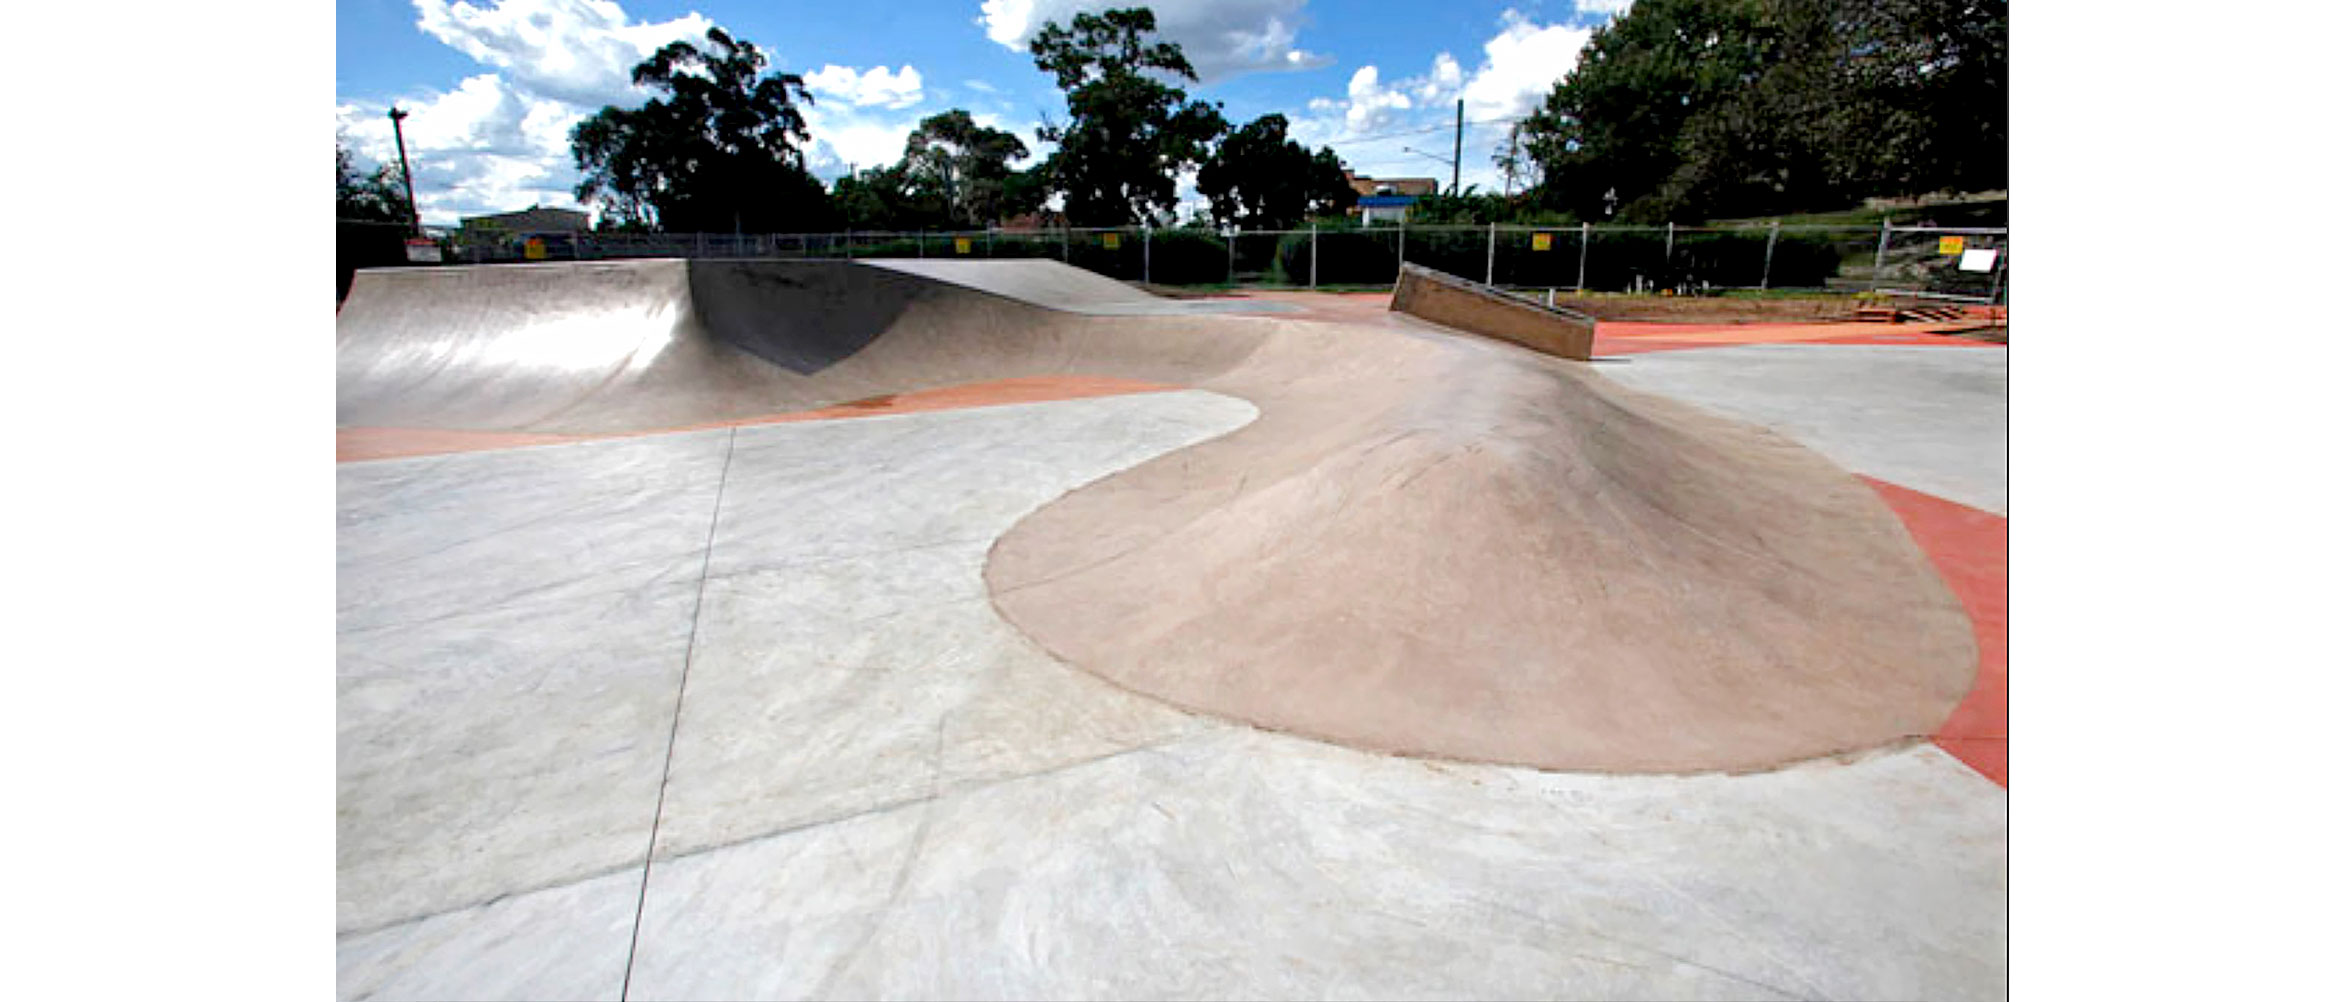 Wallsend skate park Newcastle, Concrete Skateparks